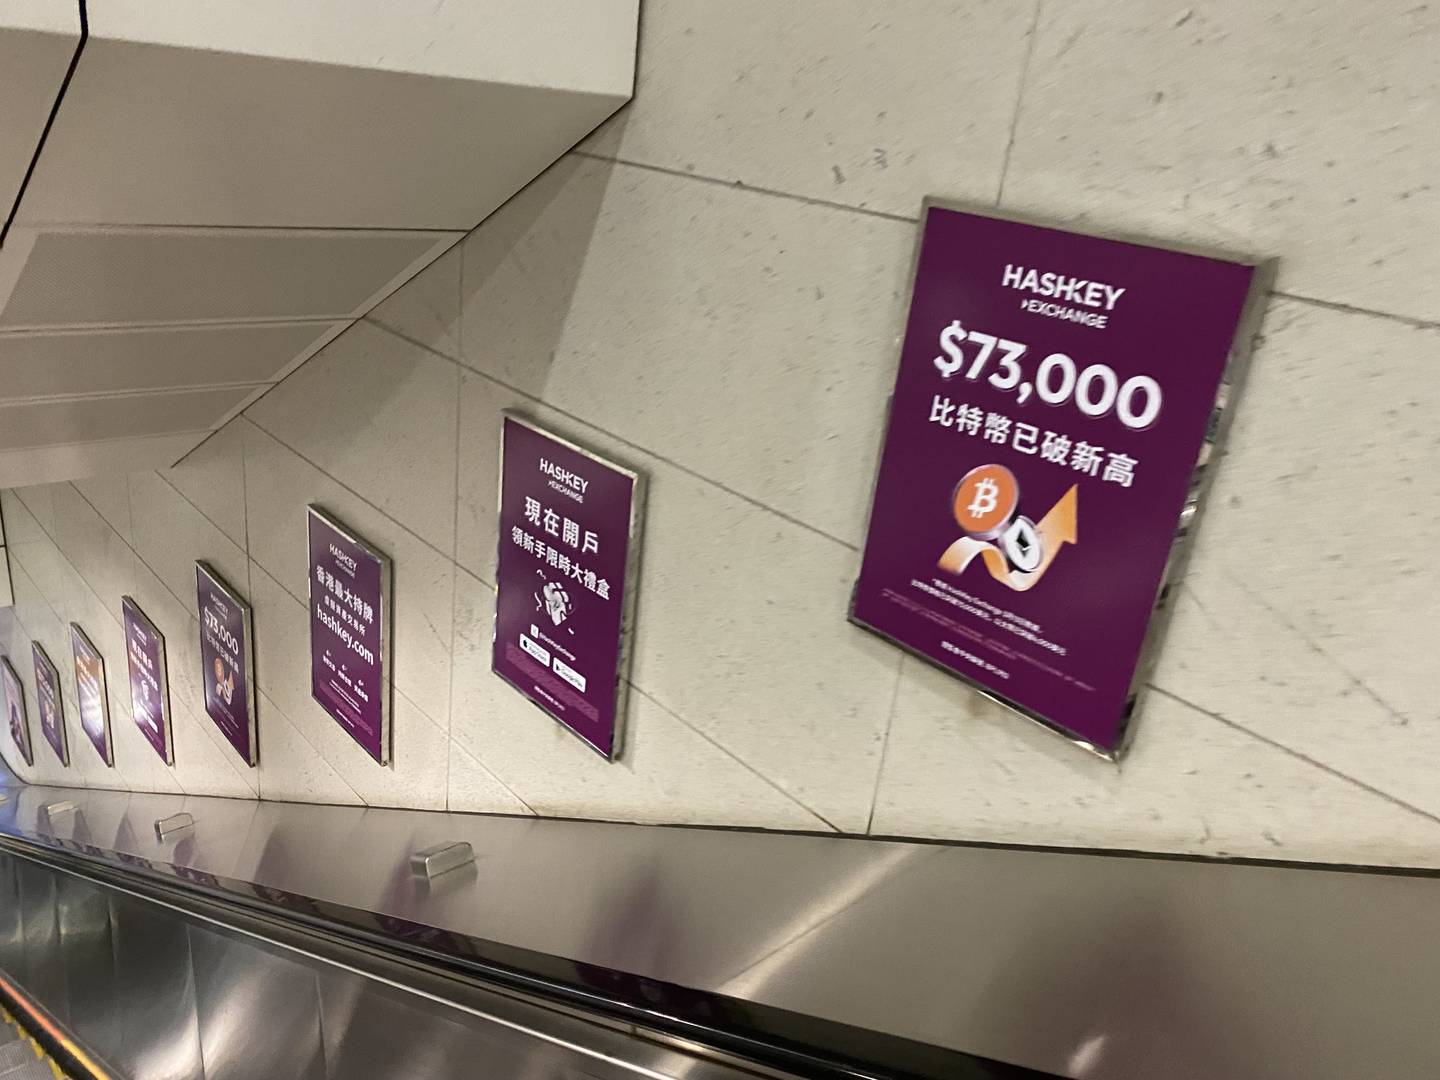 Hashkey crypto ads in Hong Kong MTR station